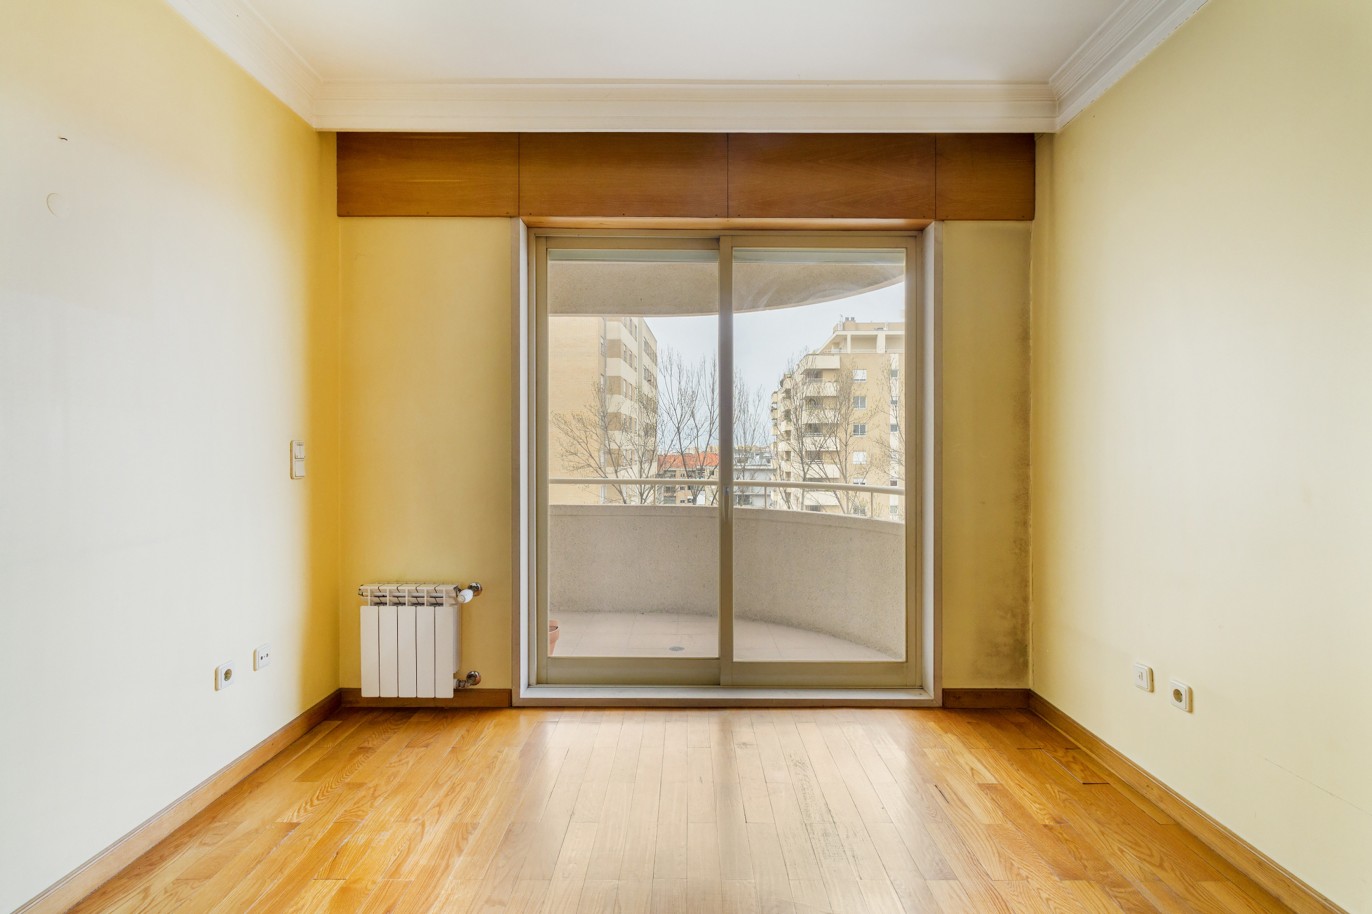 Apartamento com varanda, para venda, no Porto_221681